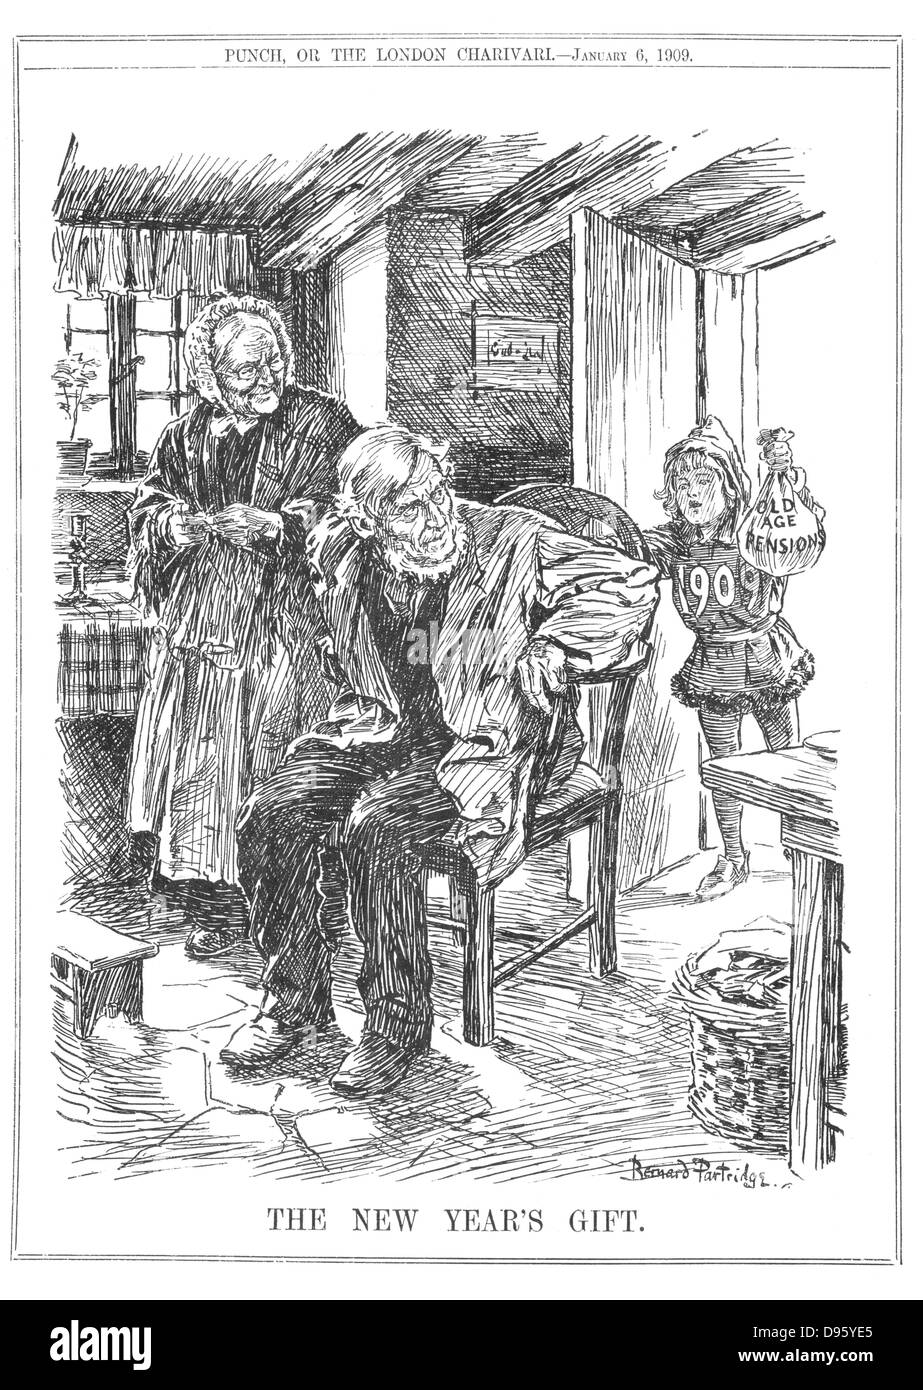 Der Säugling 1909 bringt ein älteres Paar thier Neues Jahr Geschenk - die Altersrente. Cartoon von Bernard Partridge aus 'Lochen', London, 6. Januar 1909. Stockfoto